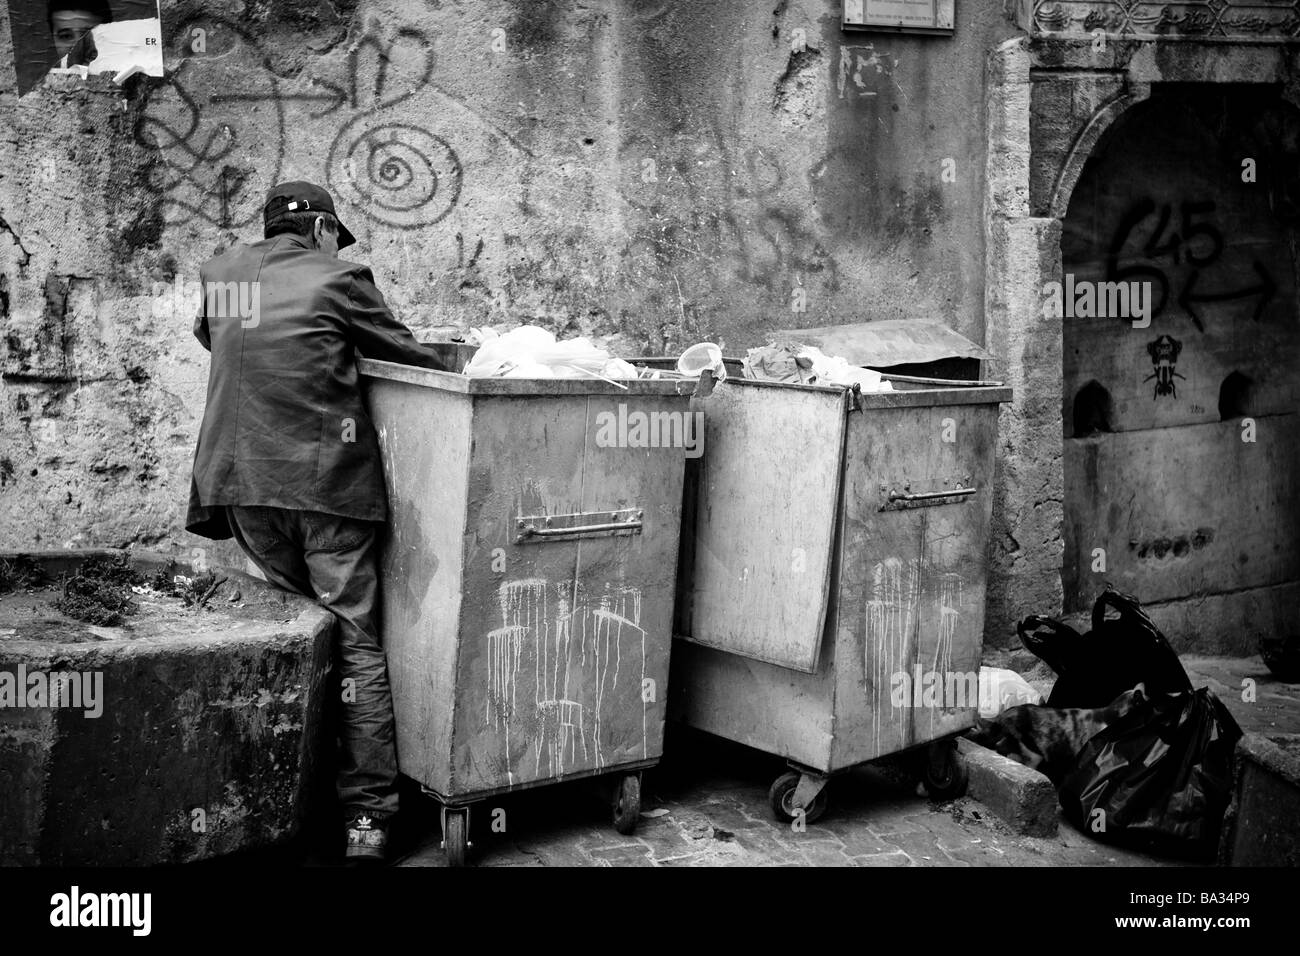 Alter Mann Suche Zeug in Mülltonne Istanbul Türkei Stockfoto